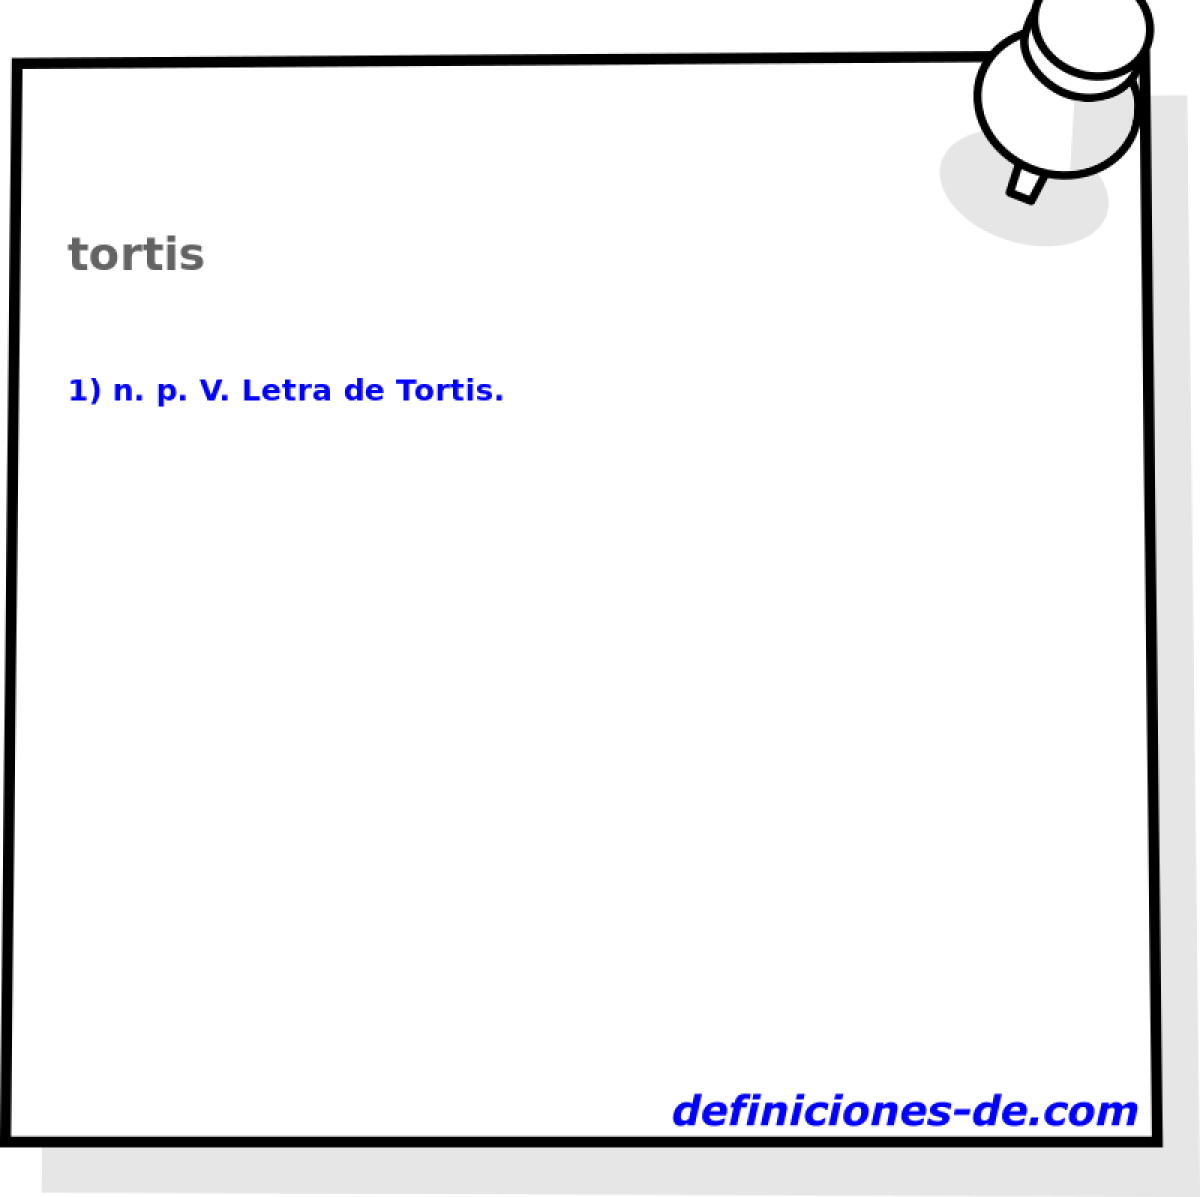 tortis 